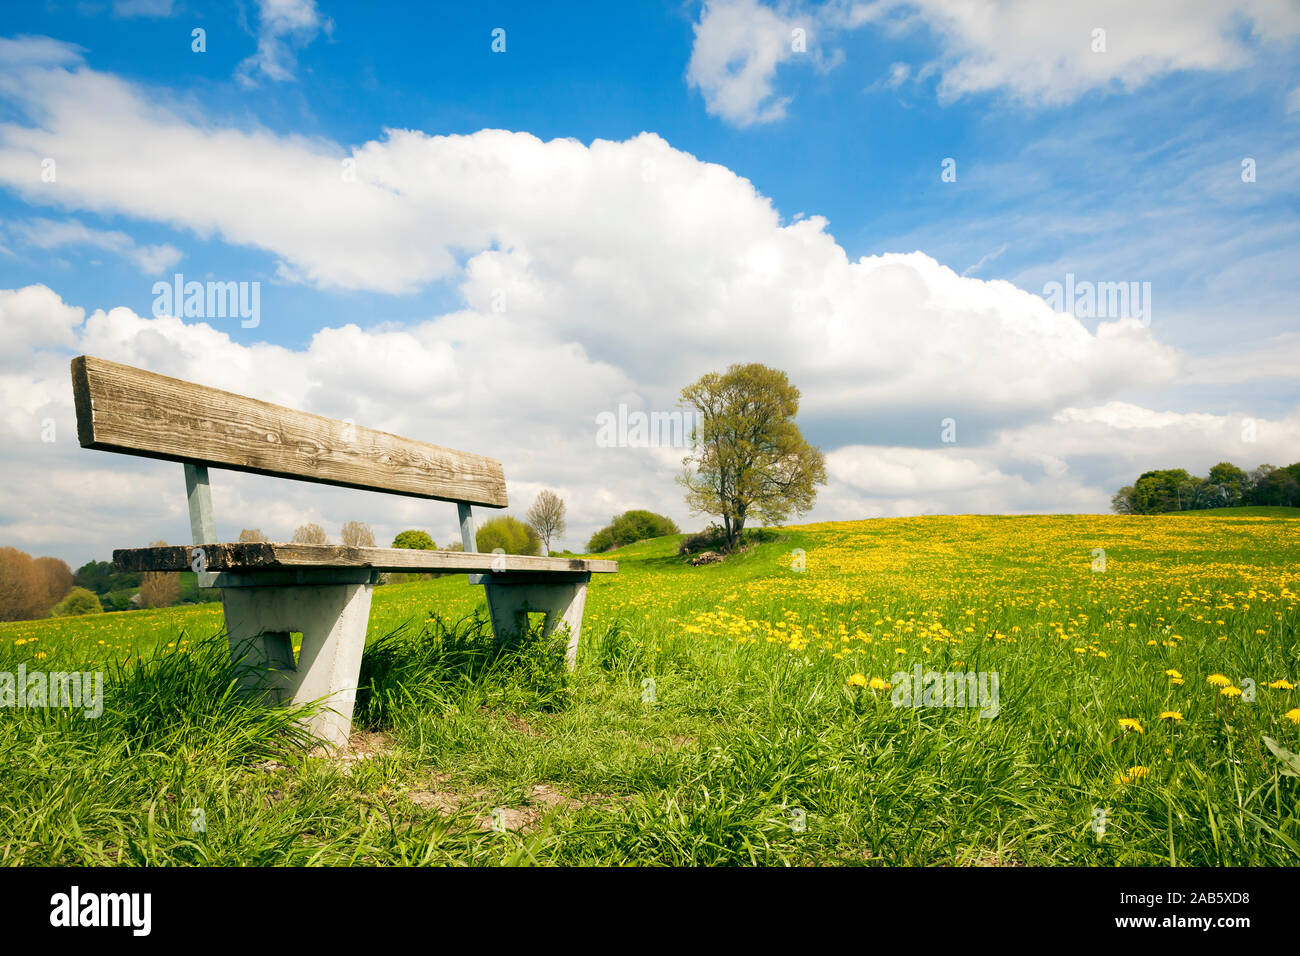 Eine schoene Sitzbank auf einer Blumenwiese Foto Stock